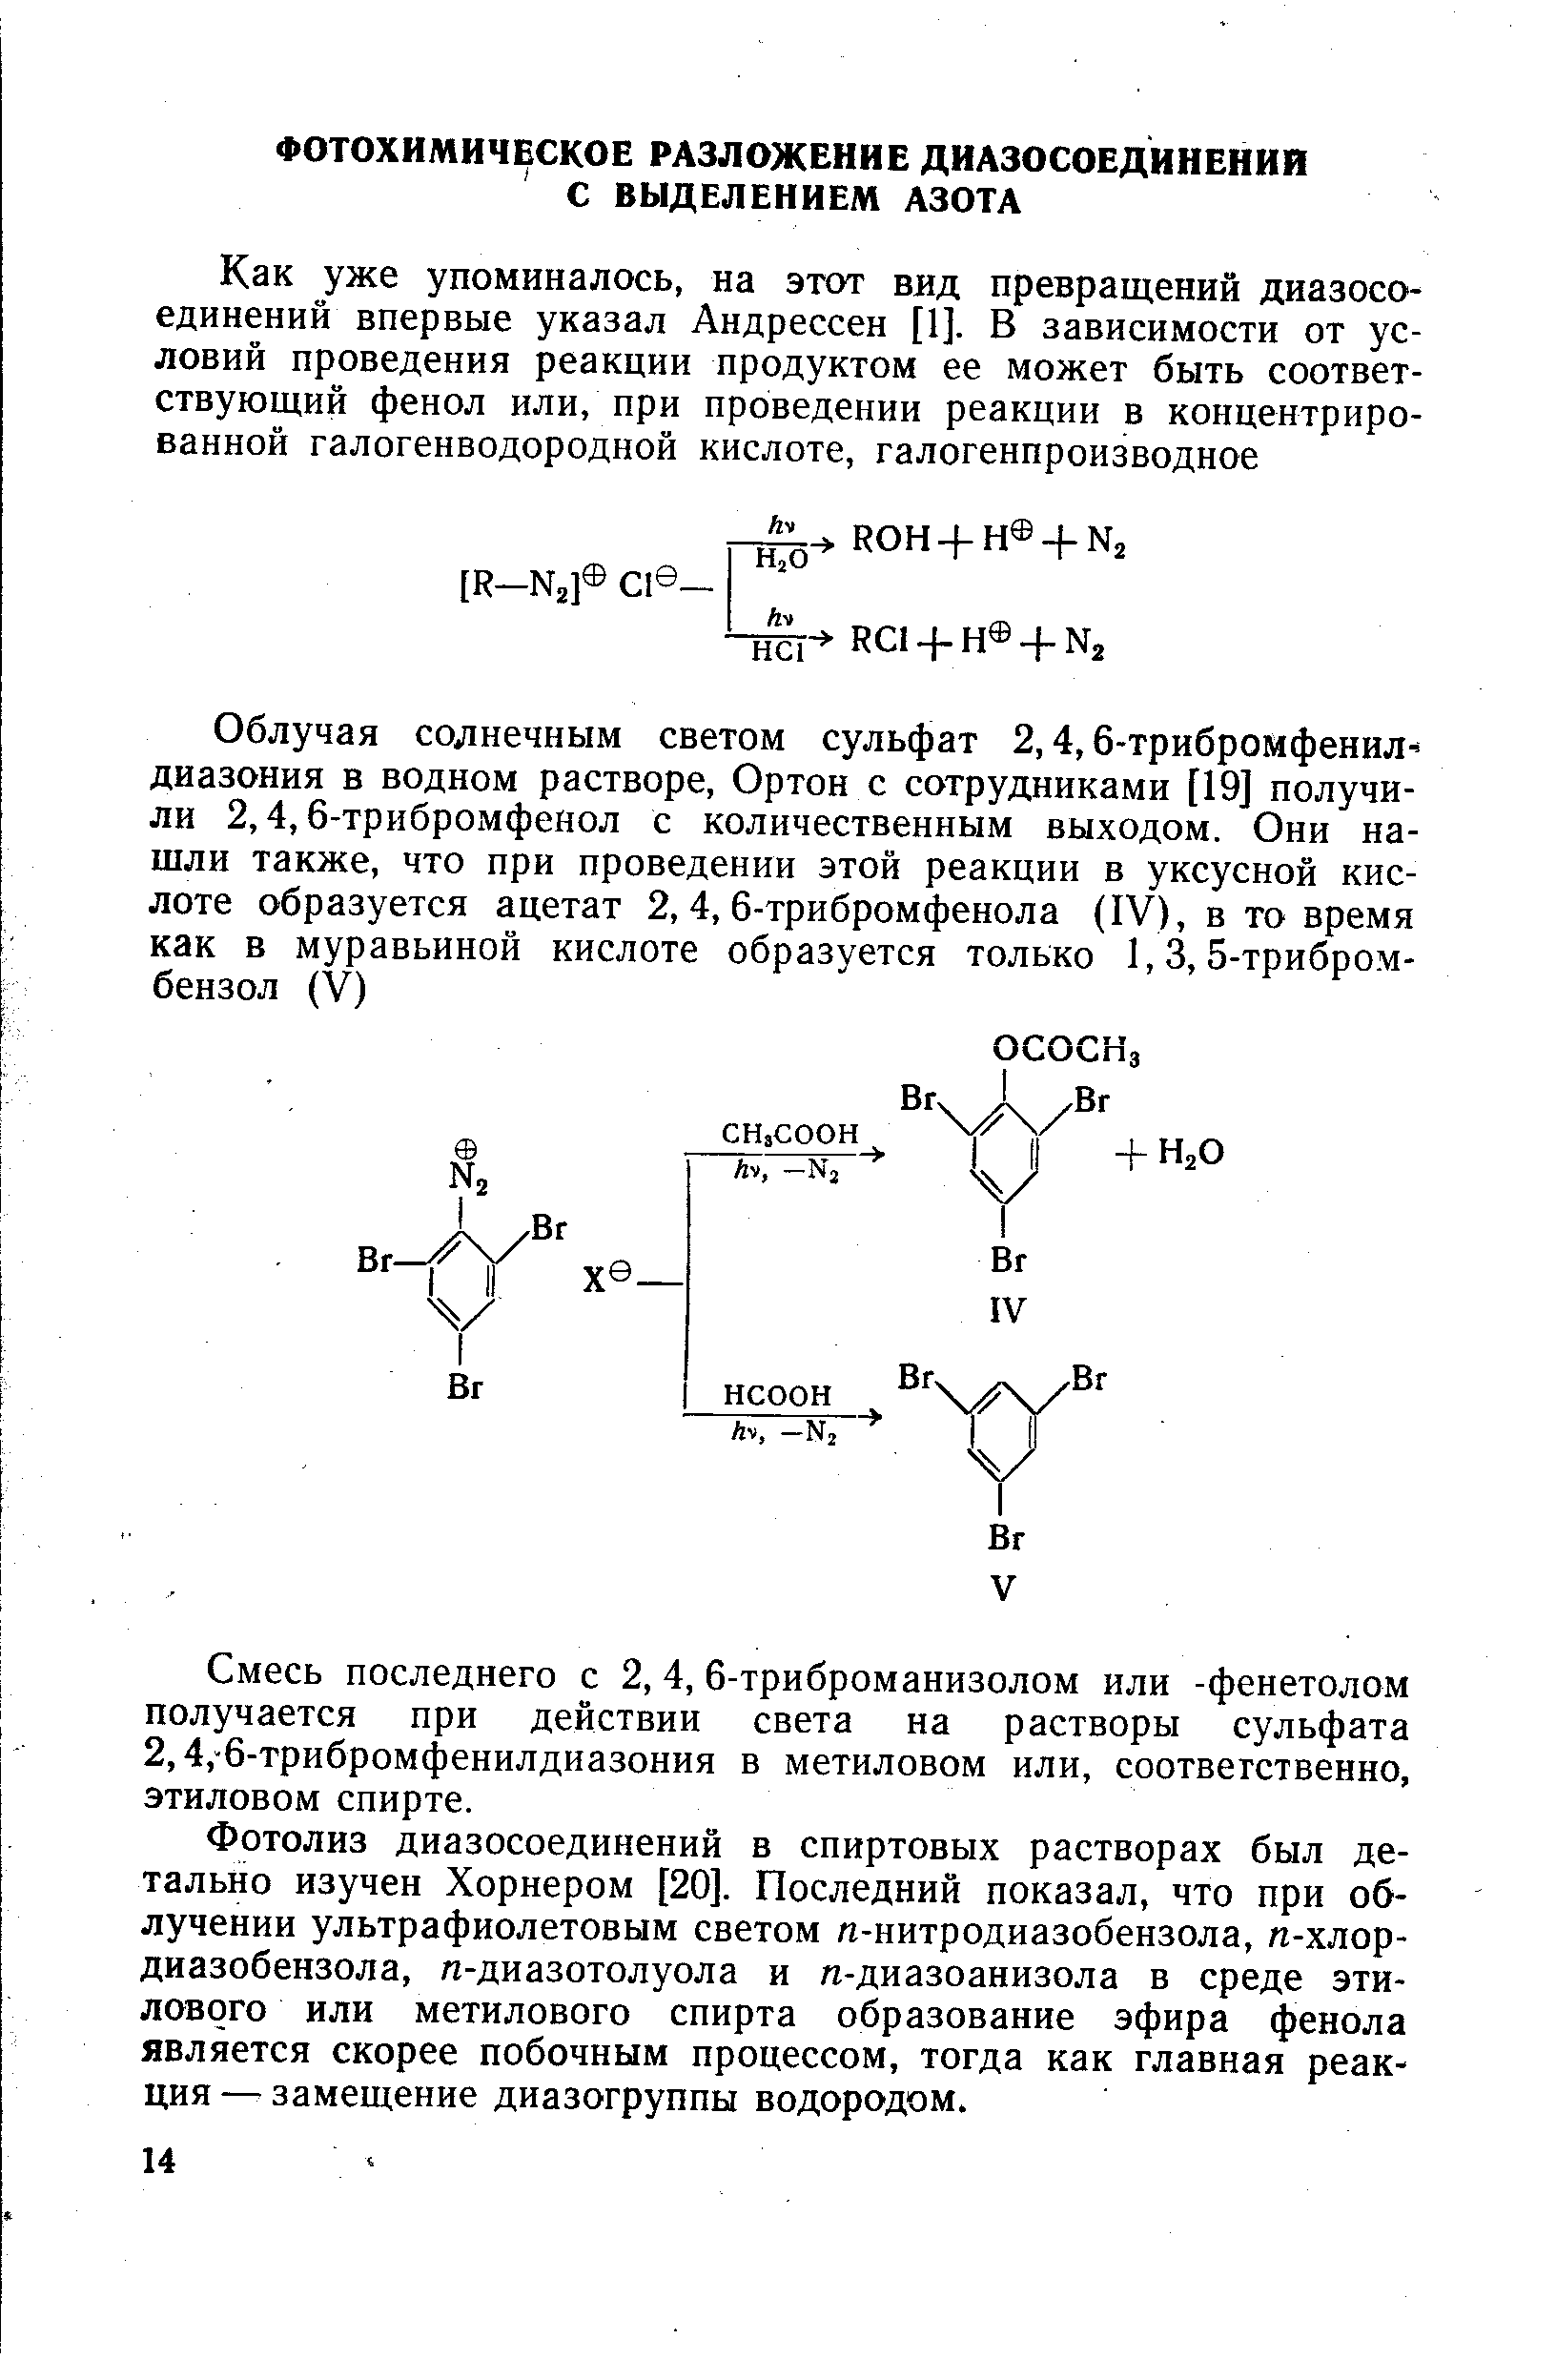 Фотолиз диазосоединений в спиртовых растворах был детально изучен Хорнером [20]. Последний показал, что при облучении ультрафиолетовым светом я-нитродиазобензола, п-хлор-диазобензола, л-диазотолуола и п-диазоанизола в среде этилового или метилового спирта образование эфира фенола является скорее побочным процессом, тогда как главная реакция — замещение диазогруппы водородом.